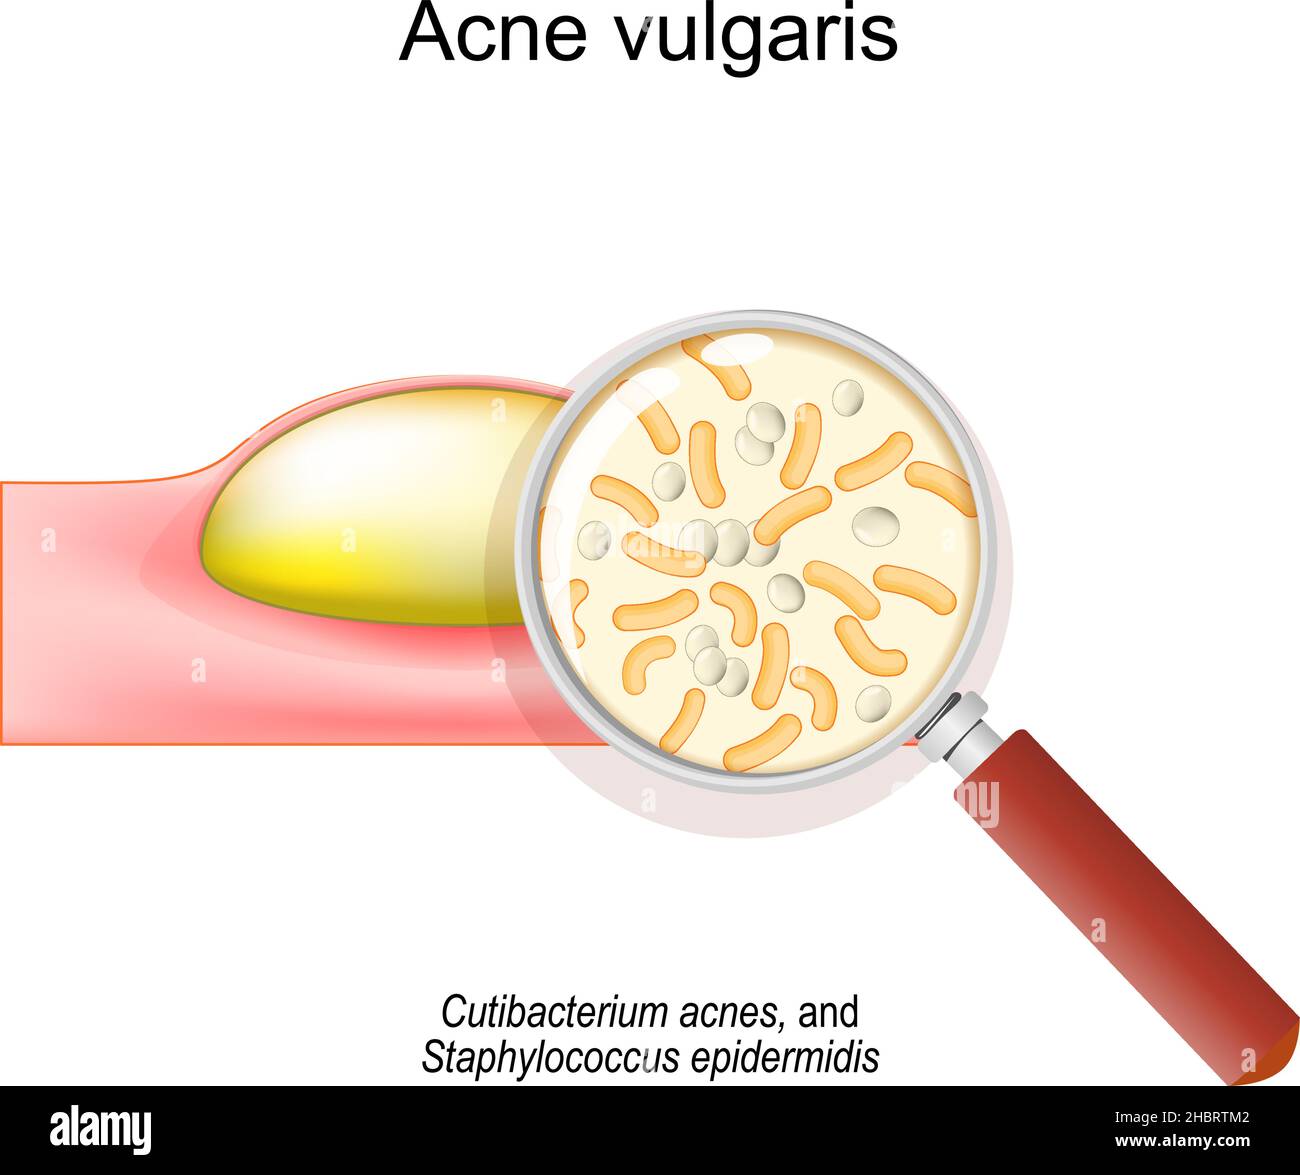 Primo piano di Acne vulgaris. Sezione trasversale di una pelle umana con pimple. Lente d'ingrandimento e batteri che causano l'acne. Cutibacterium acnes Illustrazione Vettoriale